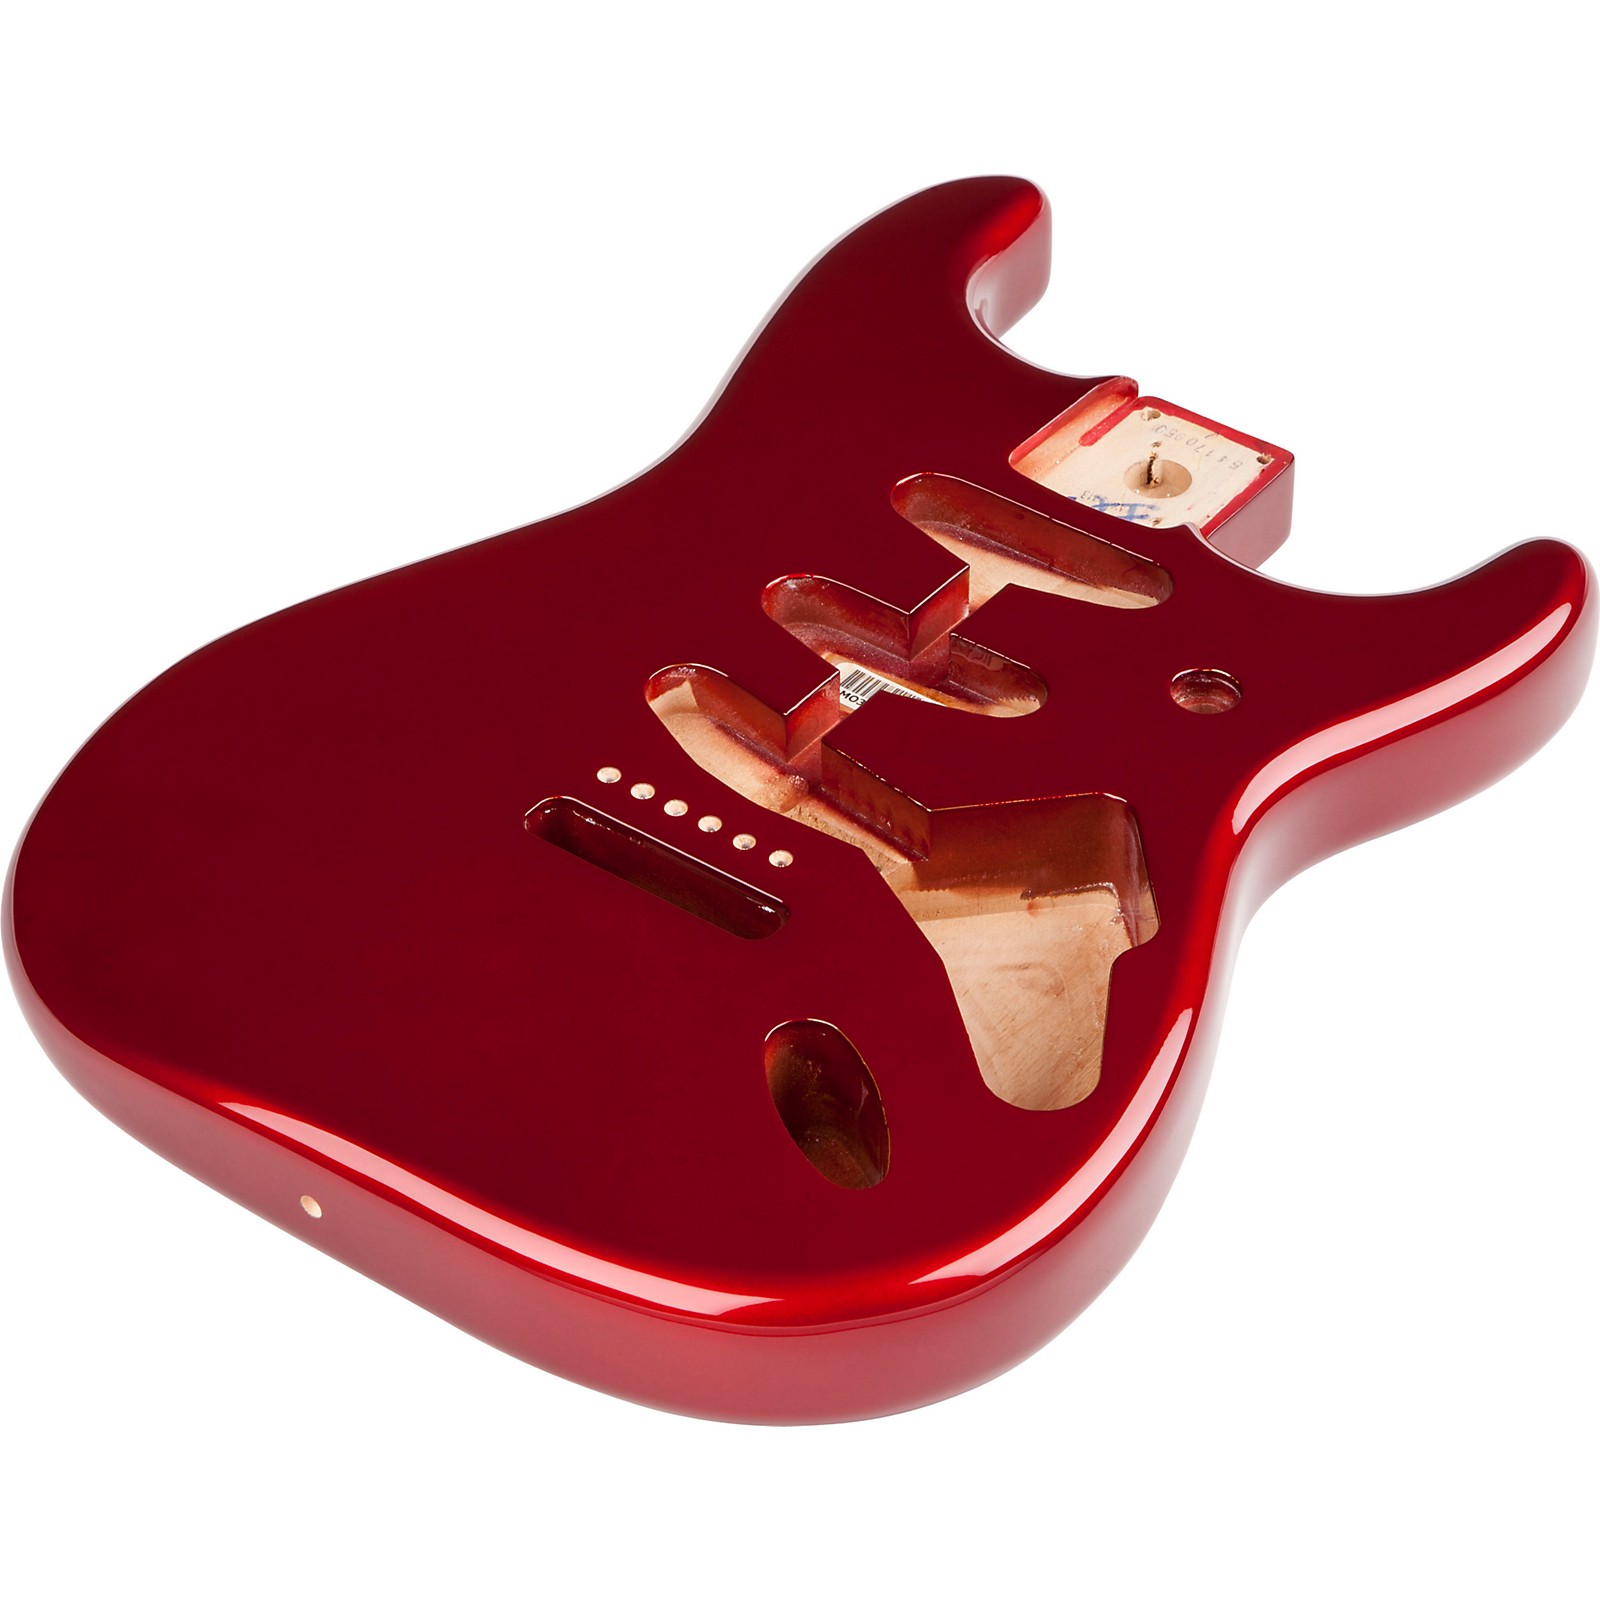 Fender Stratocaster SSS Alder Body Vintage Bridge Candy Red | Guitar Center